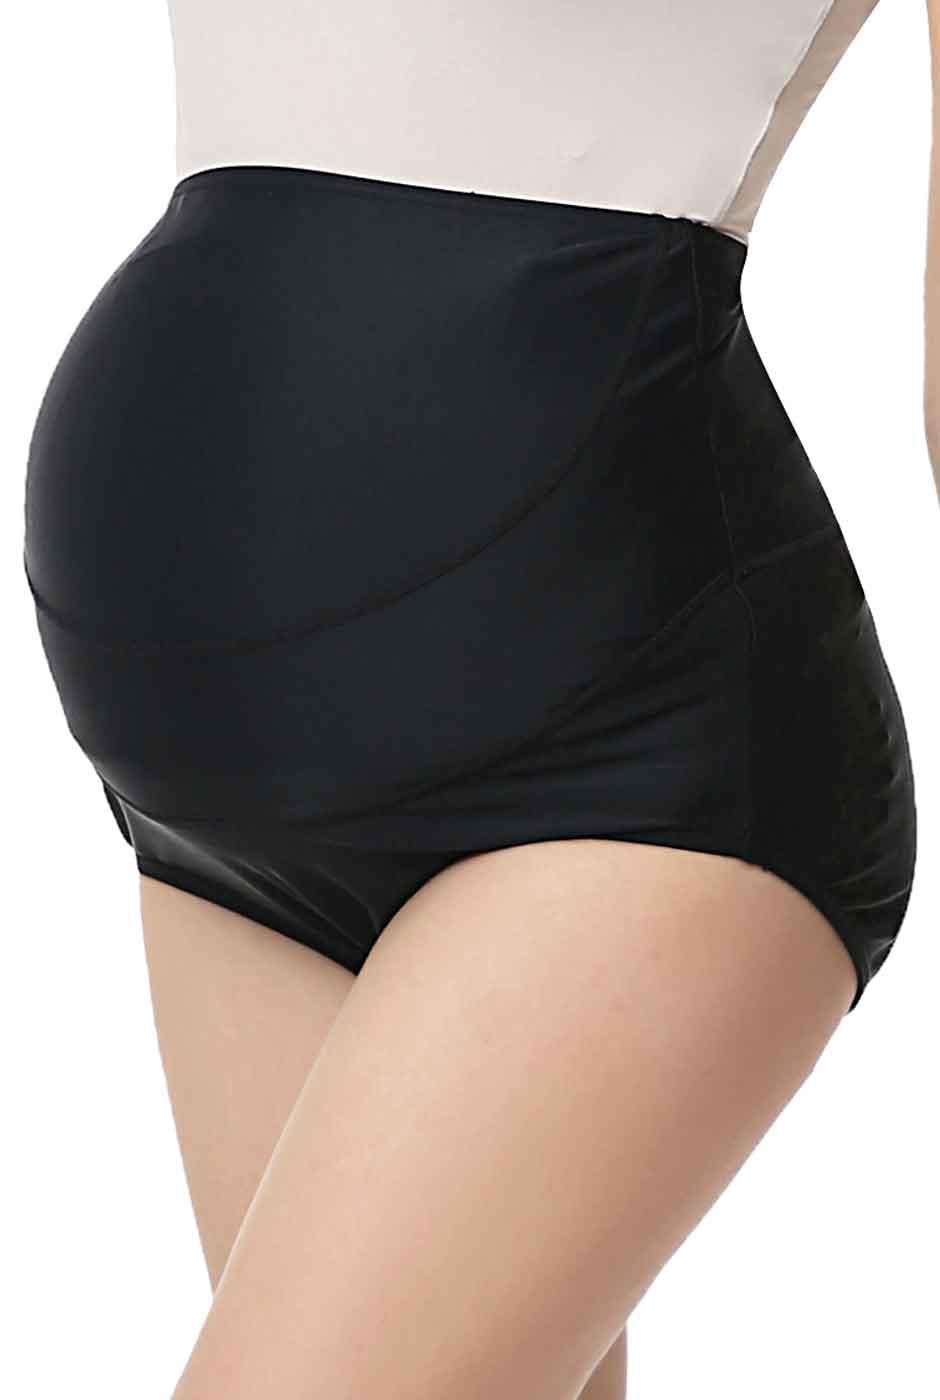 Kortney UPF 50+ Belly Support Maternity Swim Bottom